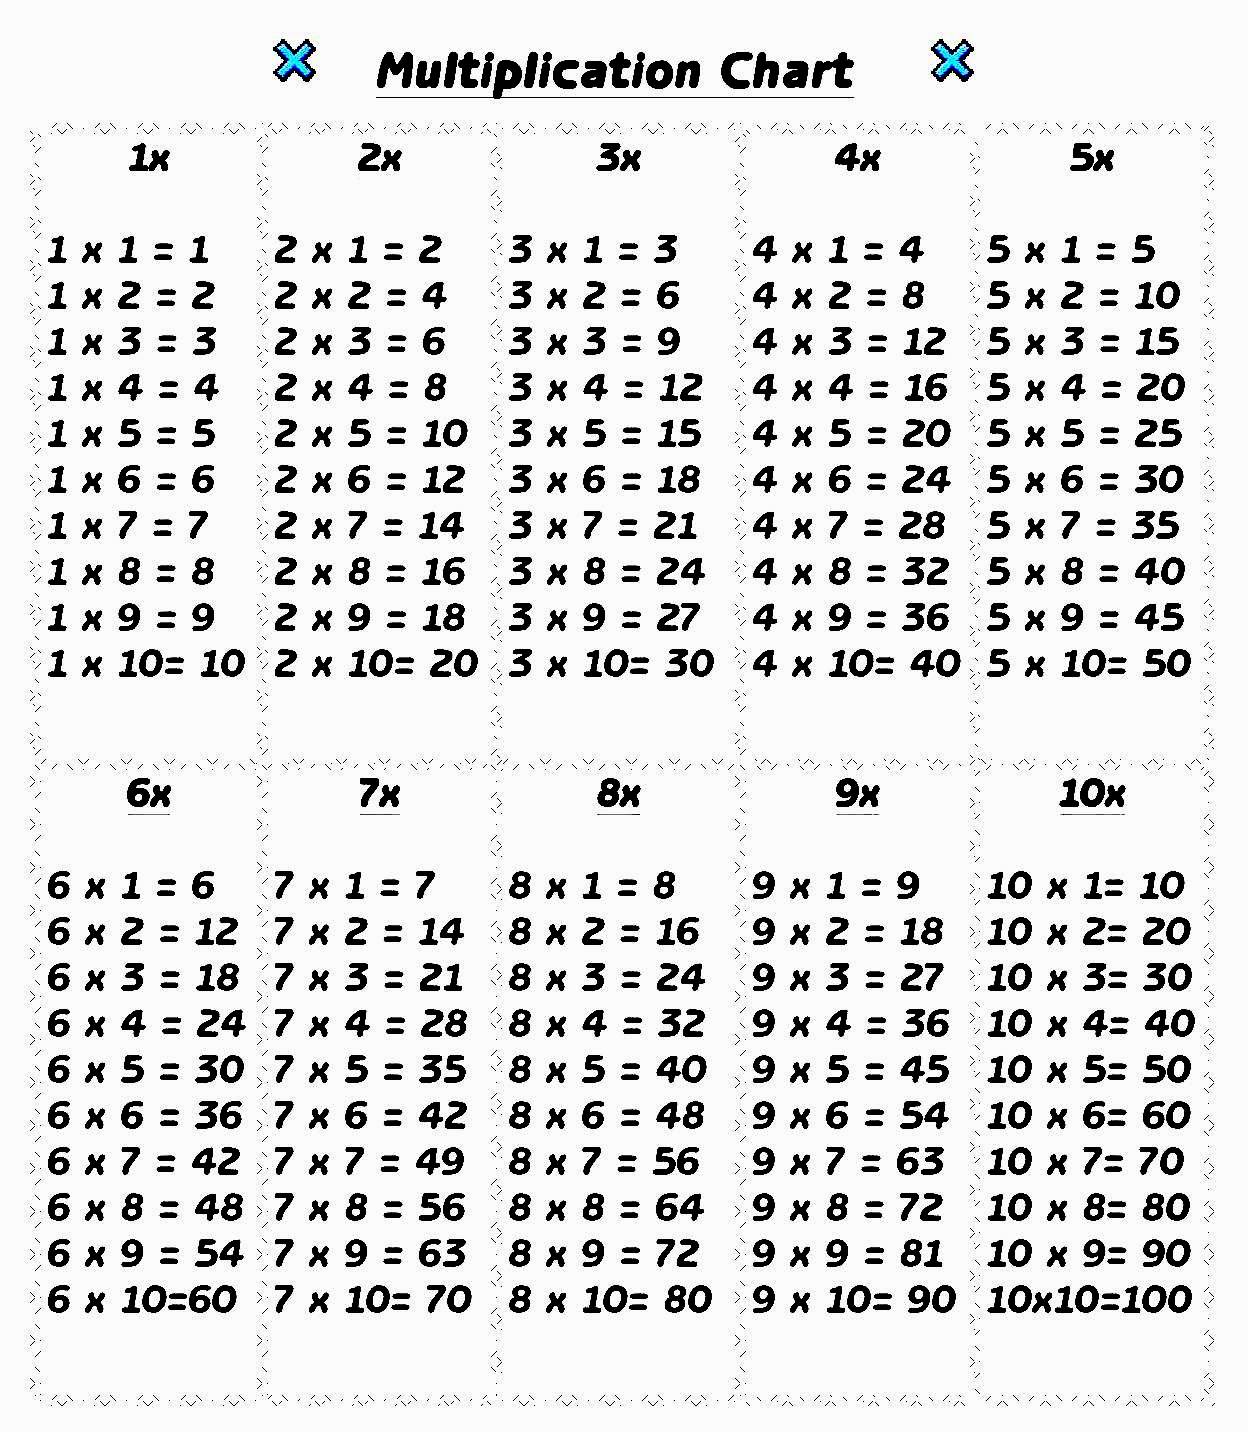 Multiplication Table 1-10 PDF